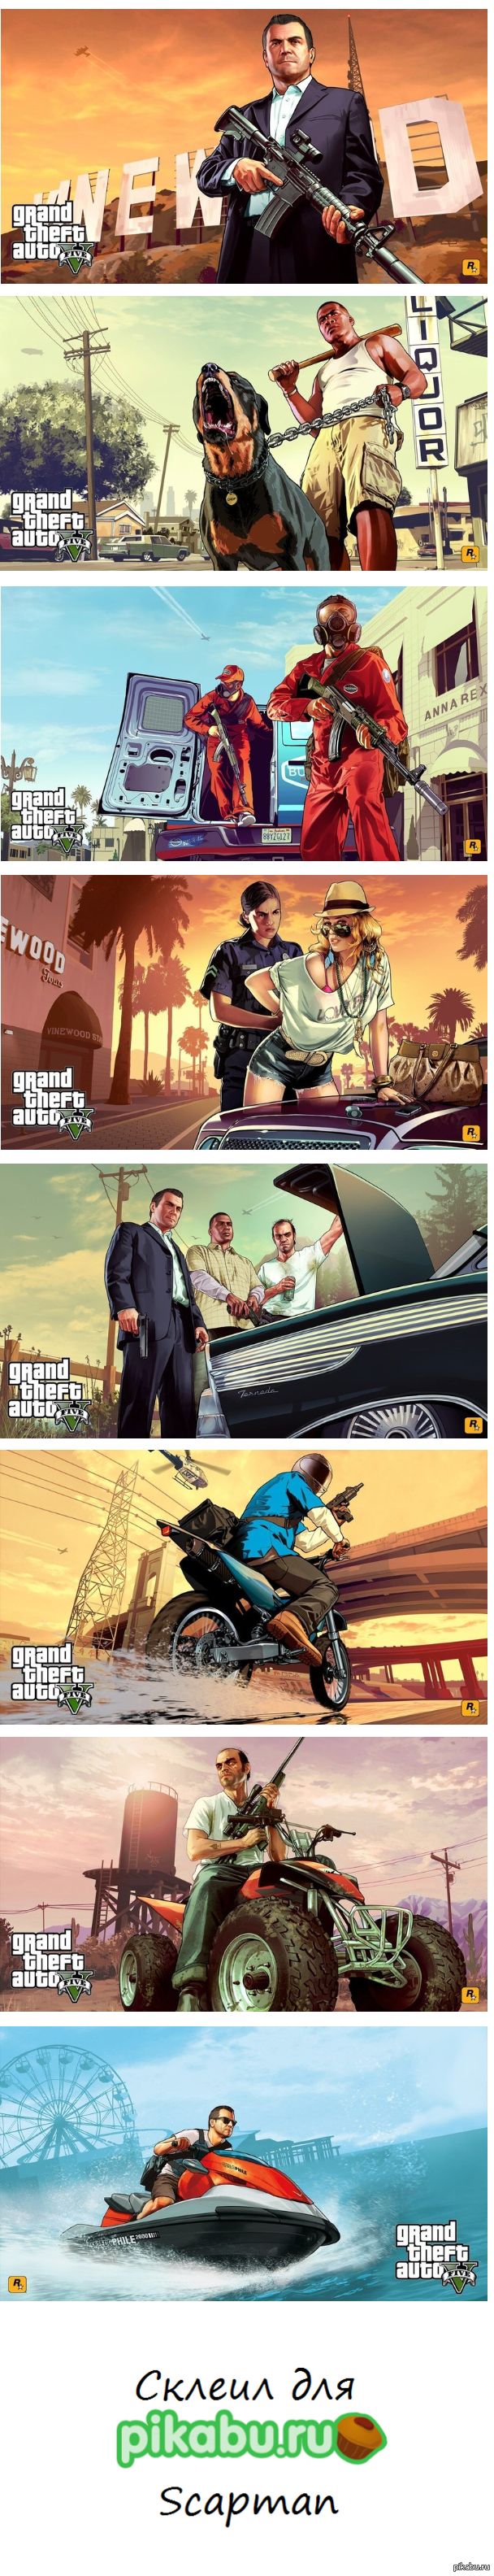    Rockstar Games   Grand Theft Auto V. 